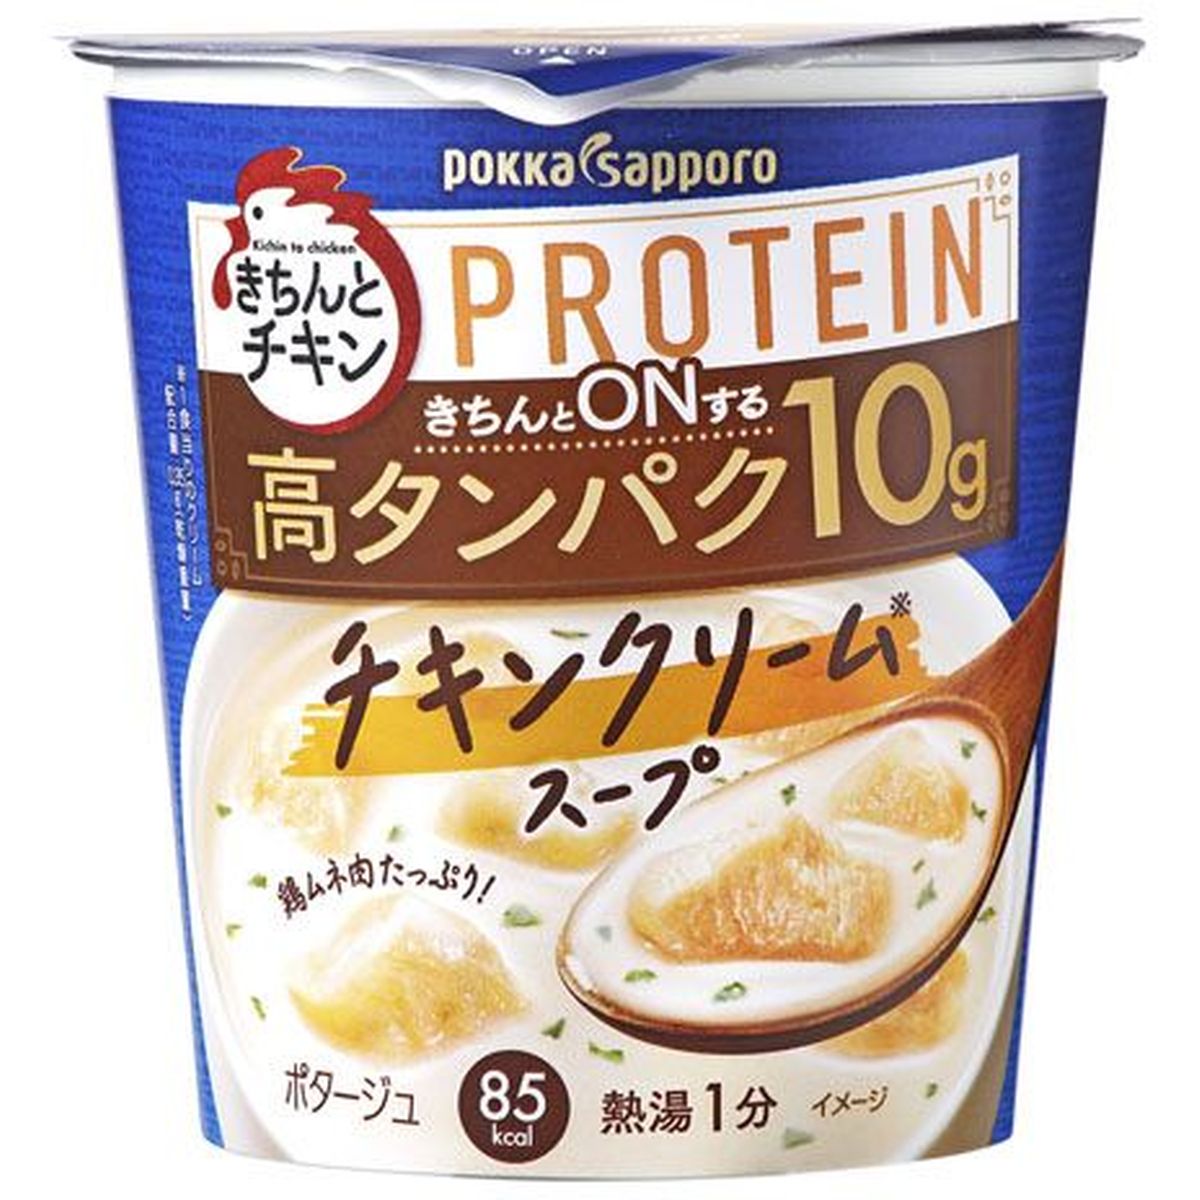 【6個入リ】ポッカサッポロ チキンクリームスープ 30.5g